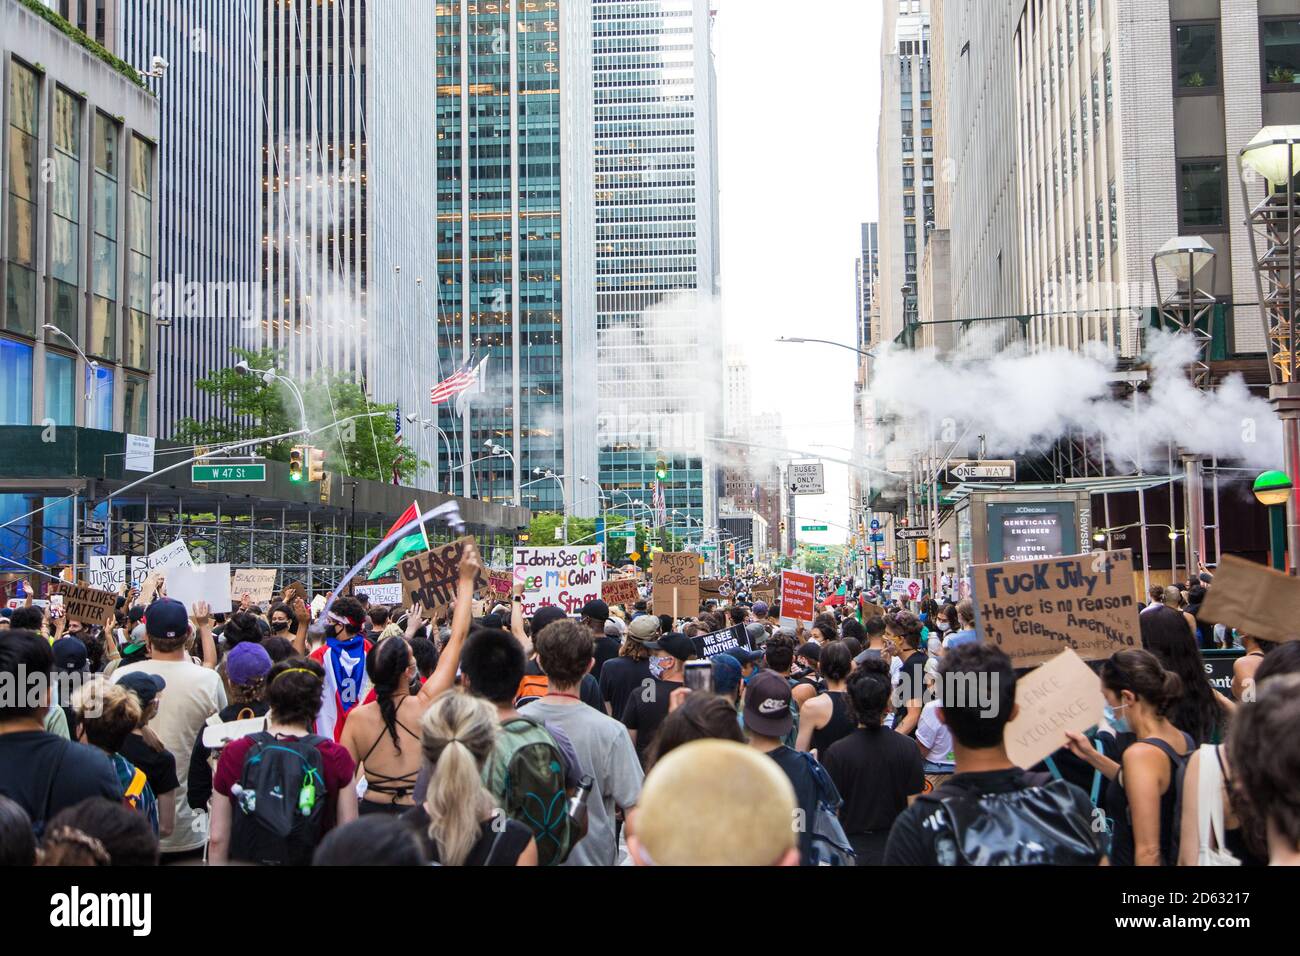 Folla di manifestanti con cartelli durante il mese di giugno, 6th Avenue, Midtown, New York City, New York, USA Foto Stock